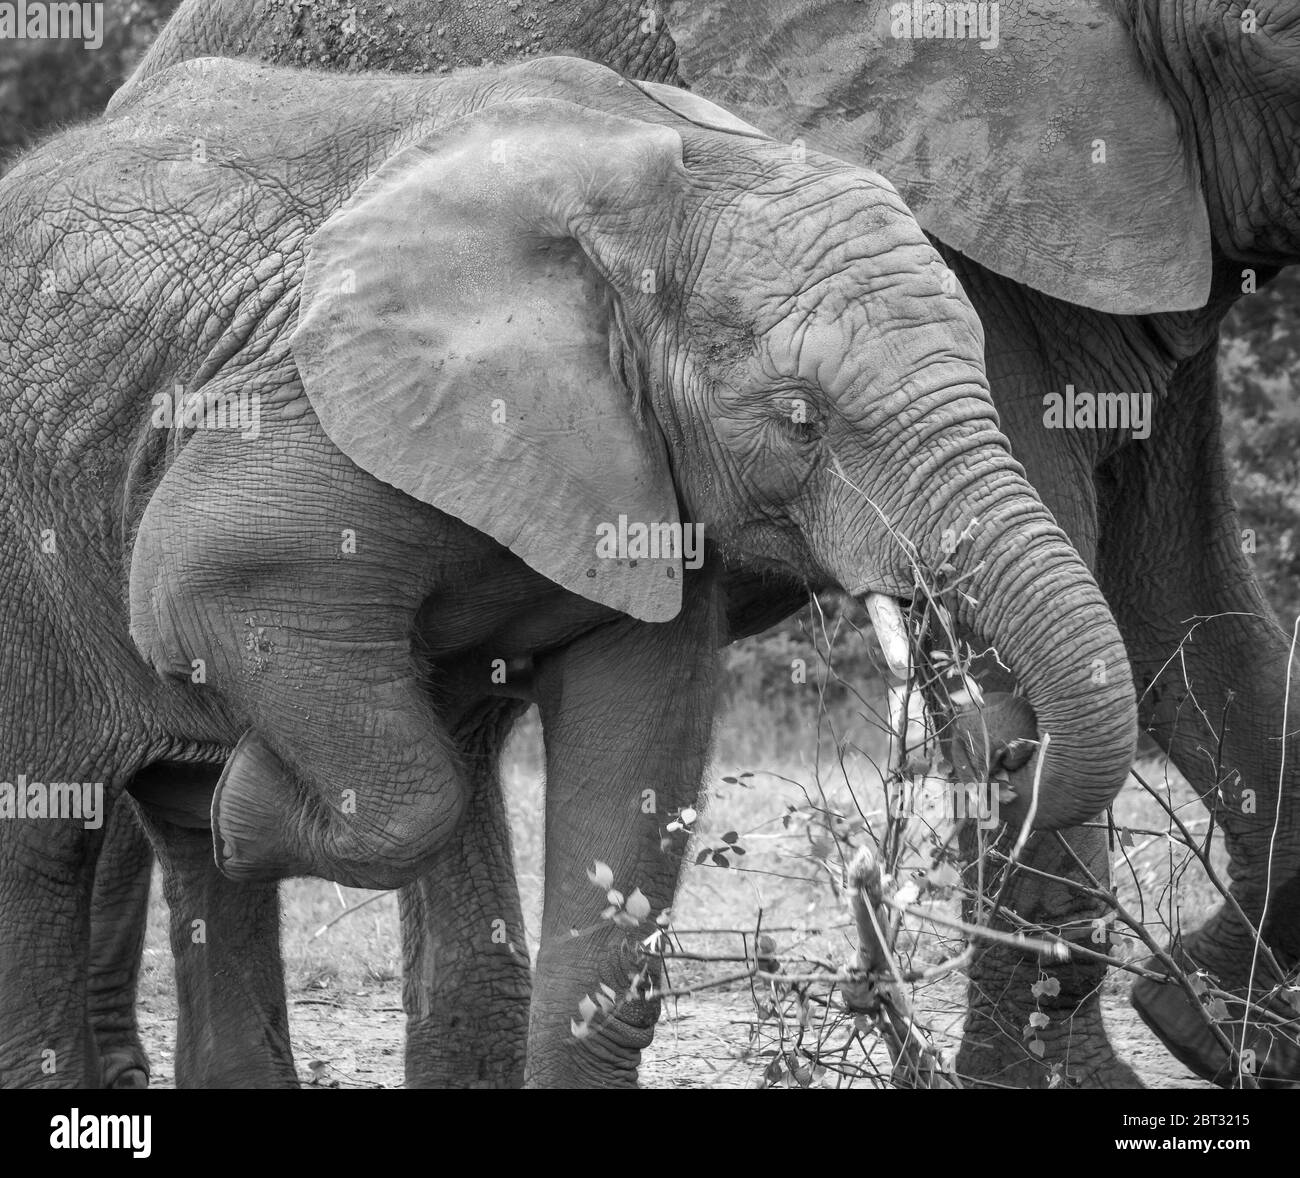 Monochrome close up of African elephants (Loxodonta africana) close together in captivity, West Midland Safari Park, UK. Elephant calf lifting leg! Stock Photo